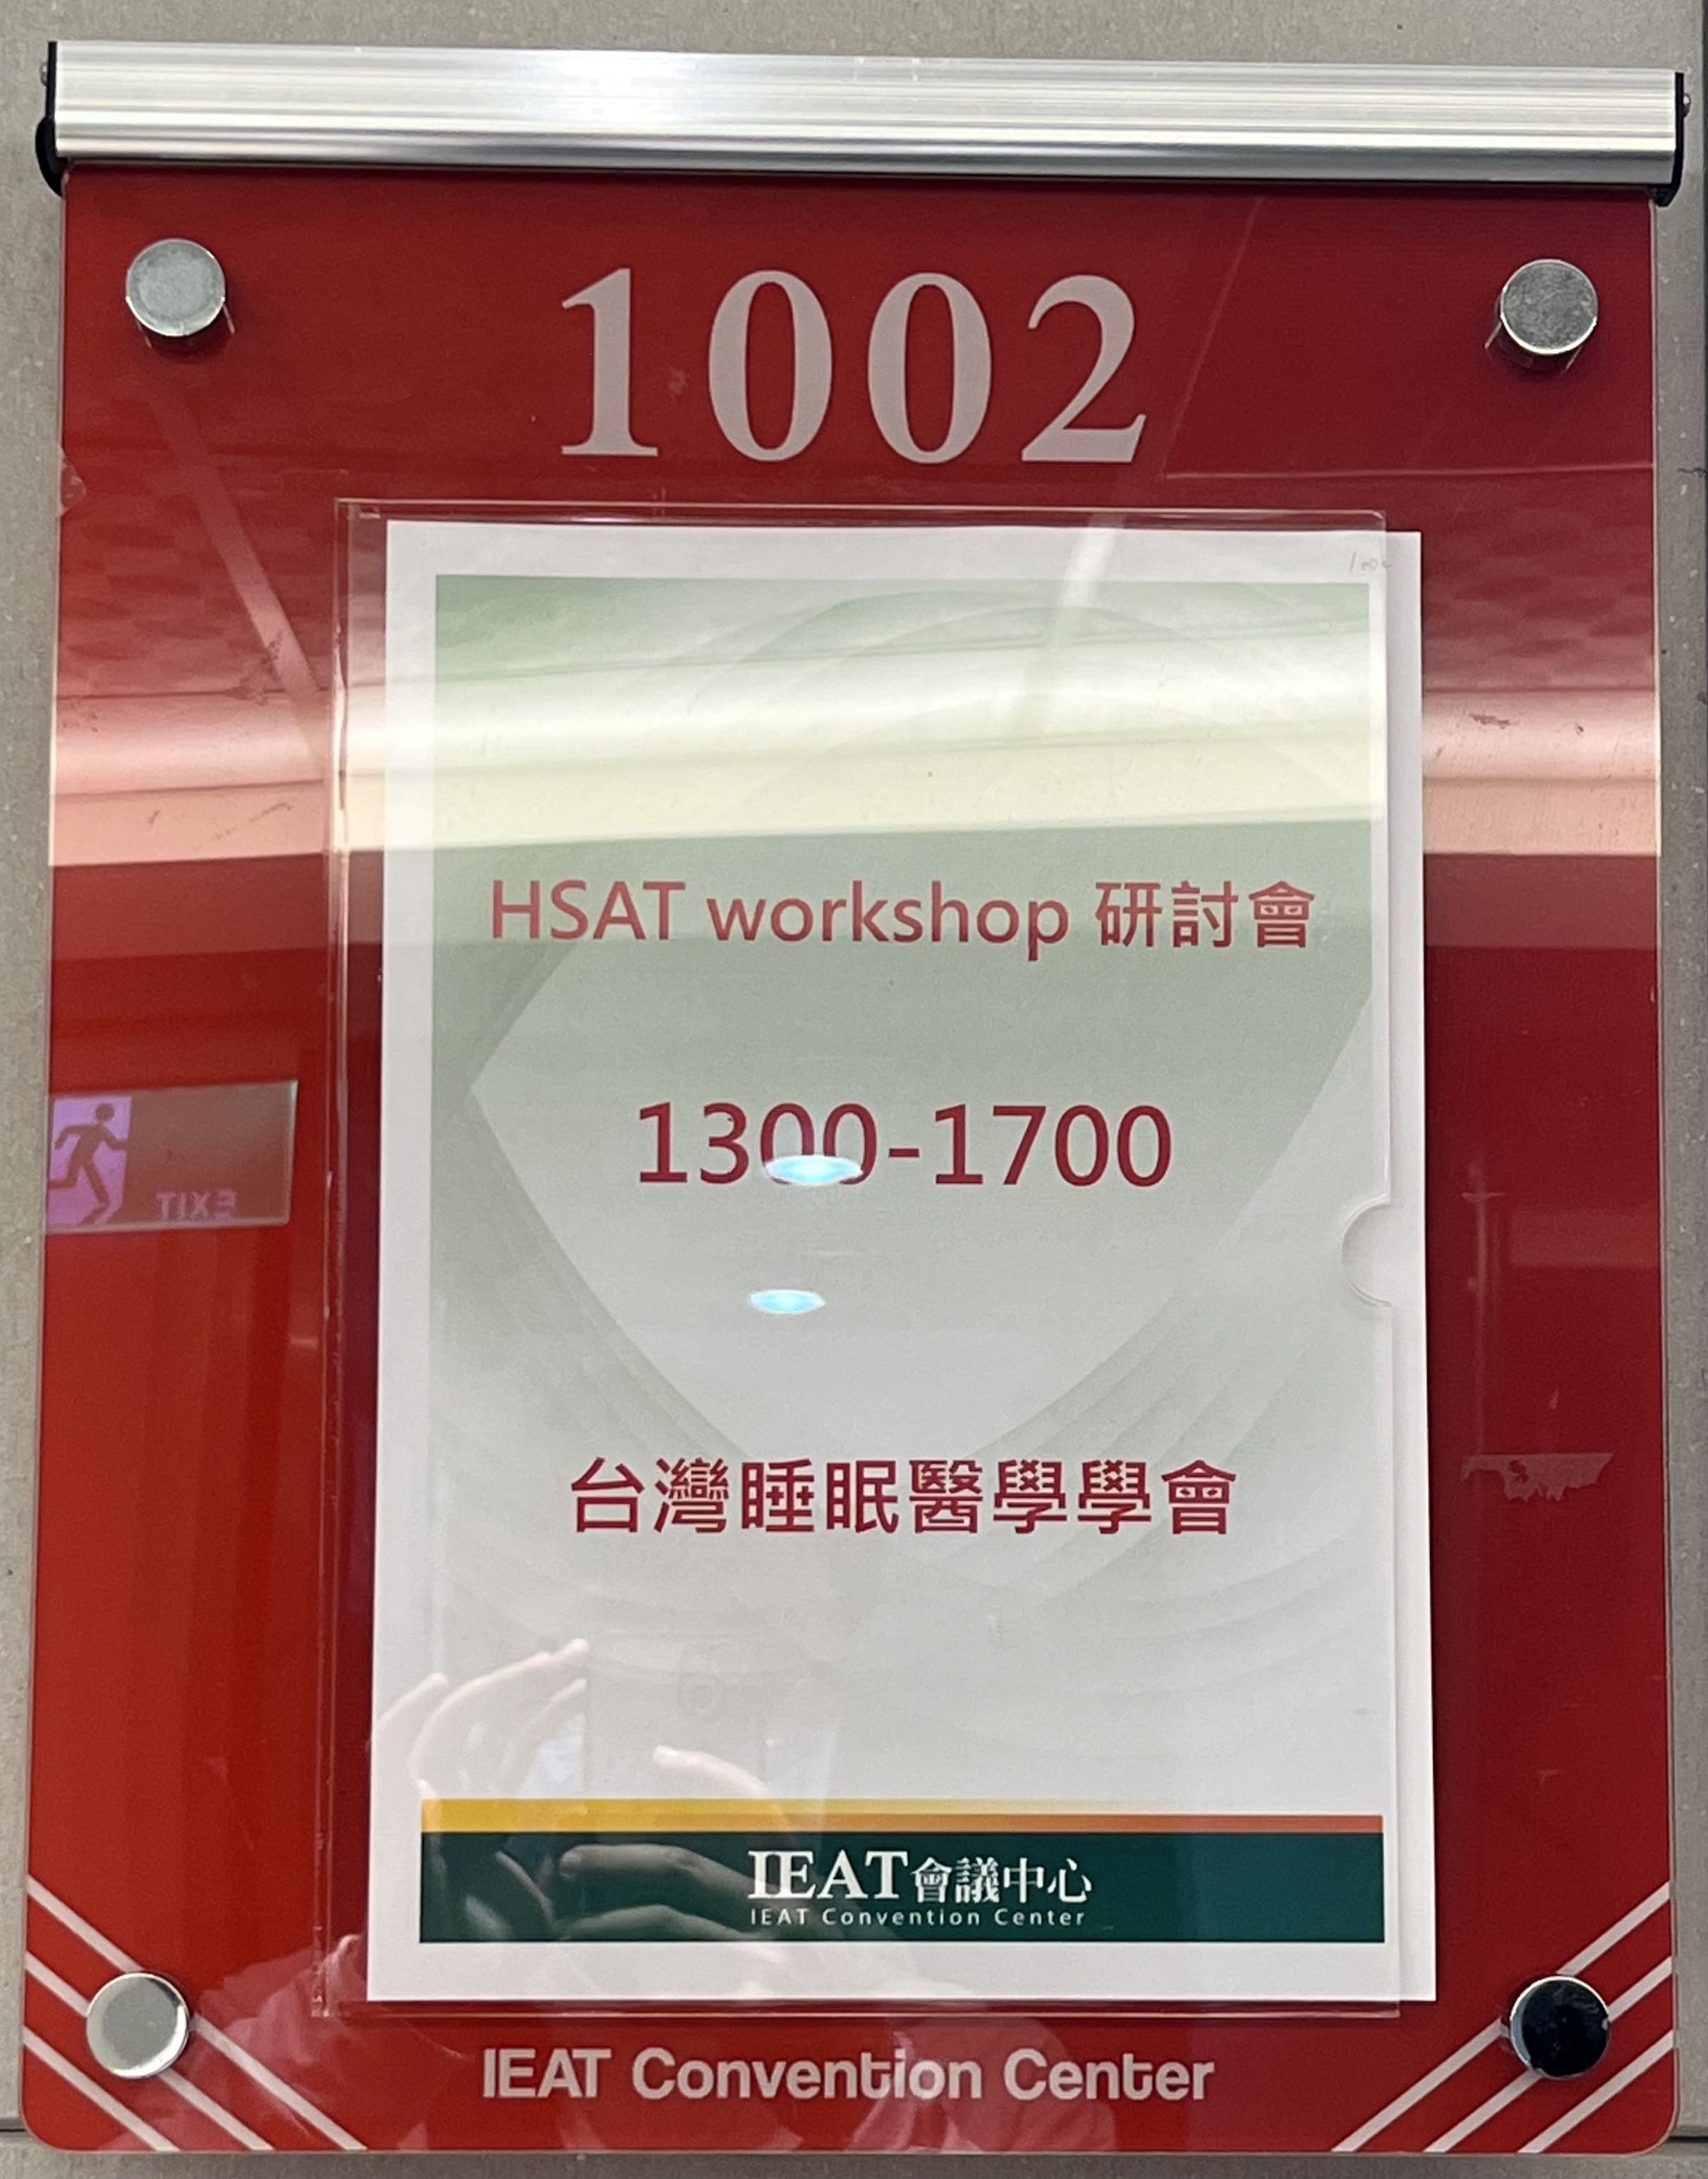 參加由台灣睡眠醫學學會舉辦之113年HSAT workshop研討會